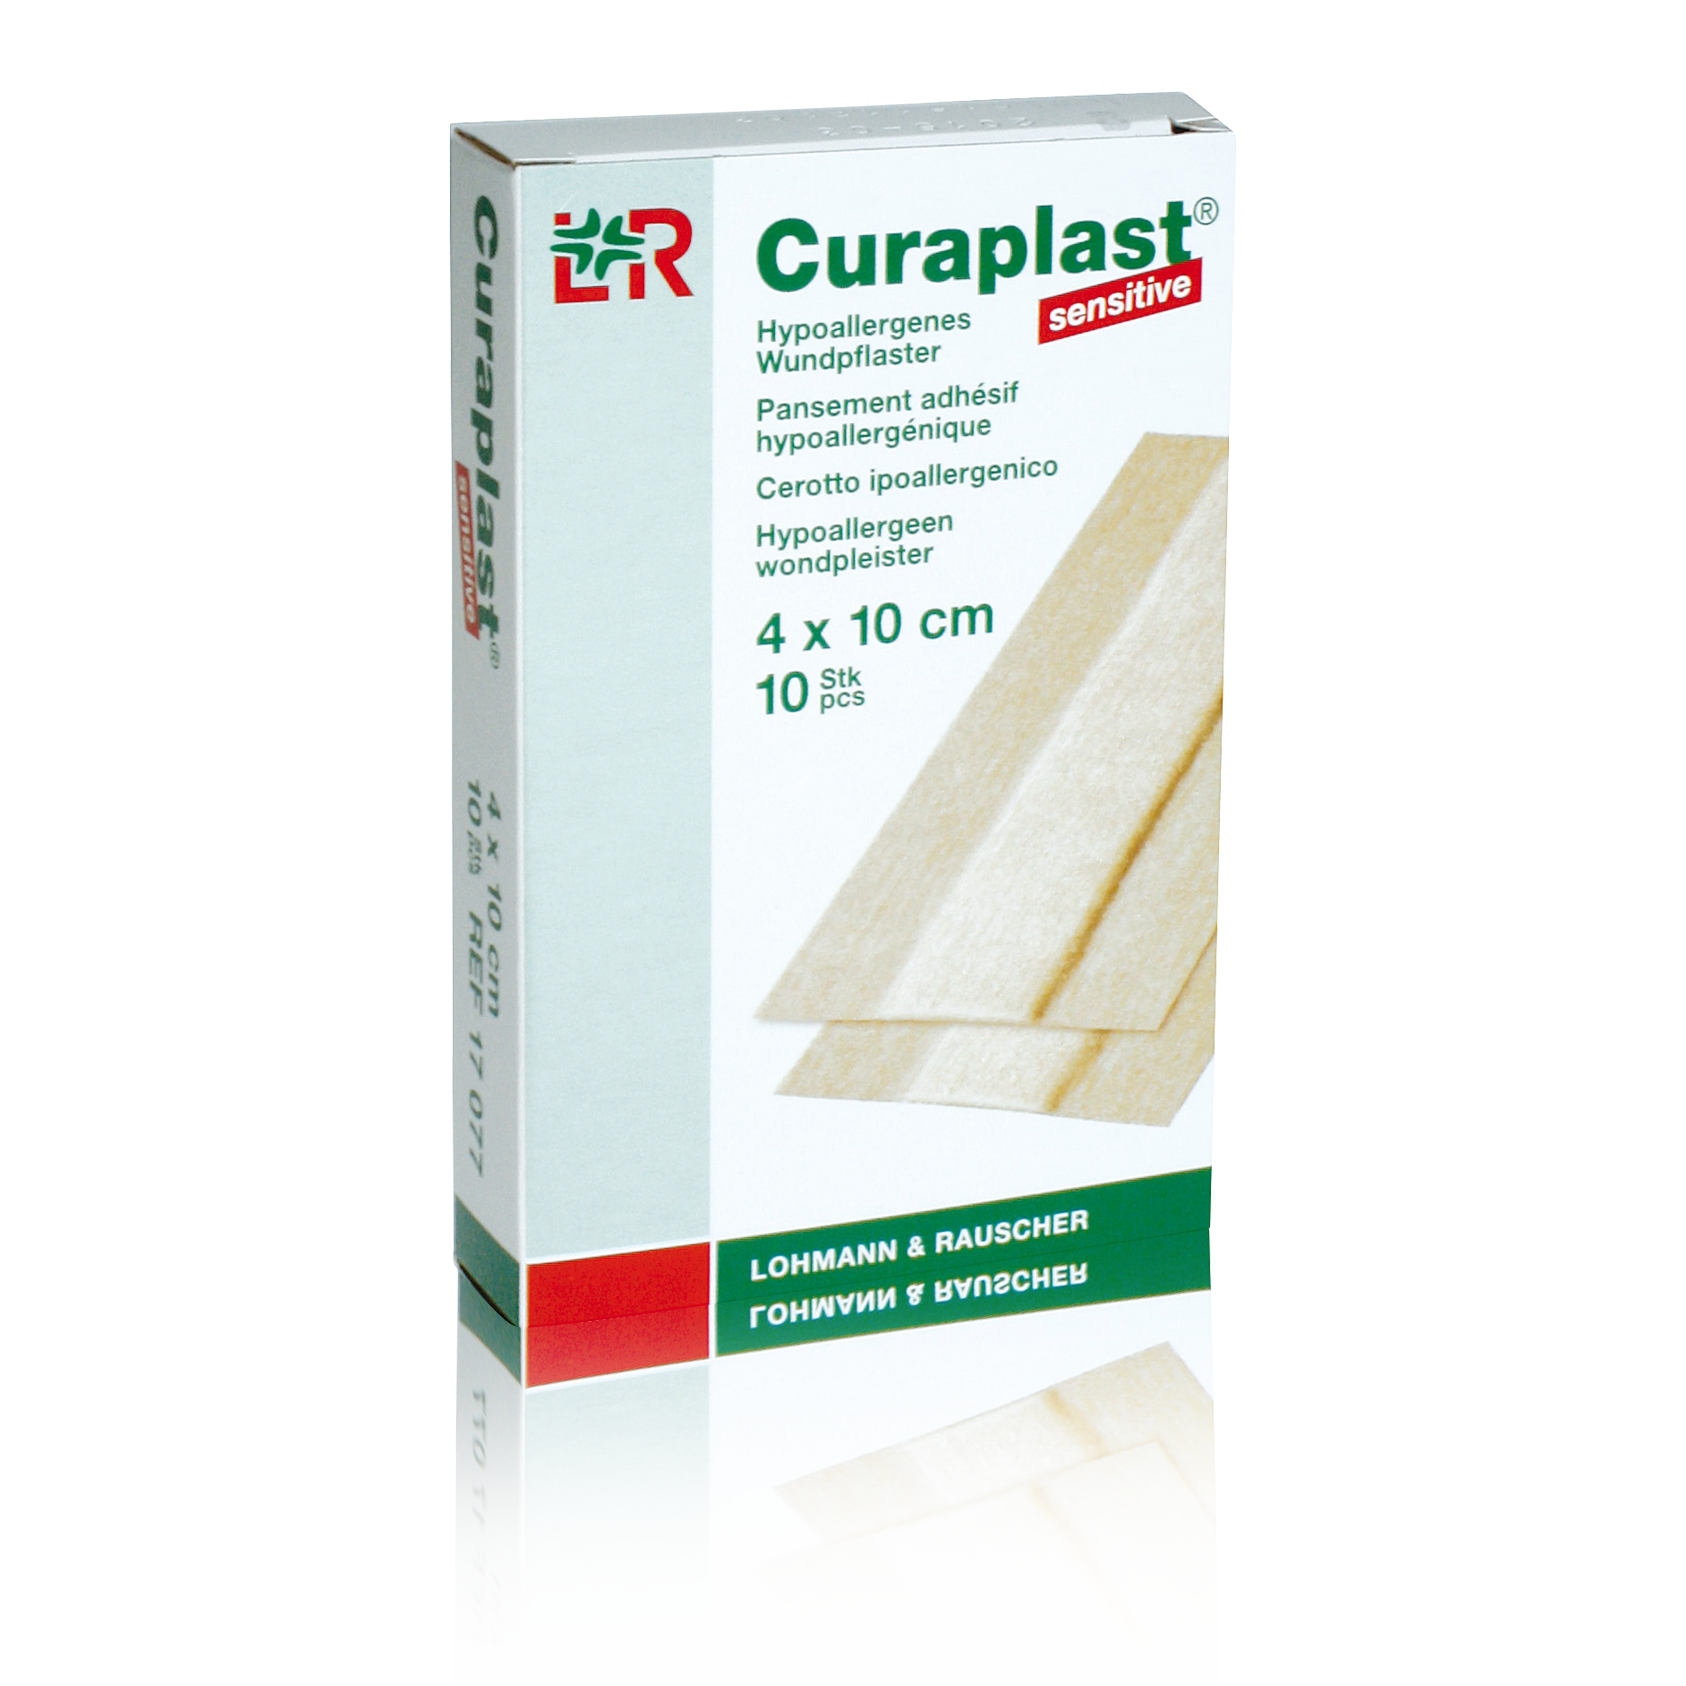 curaplast-sensitive-4cm-x-10-cm-_11241